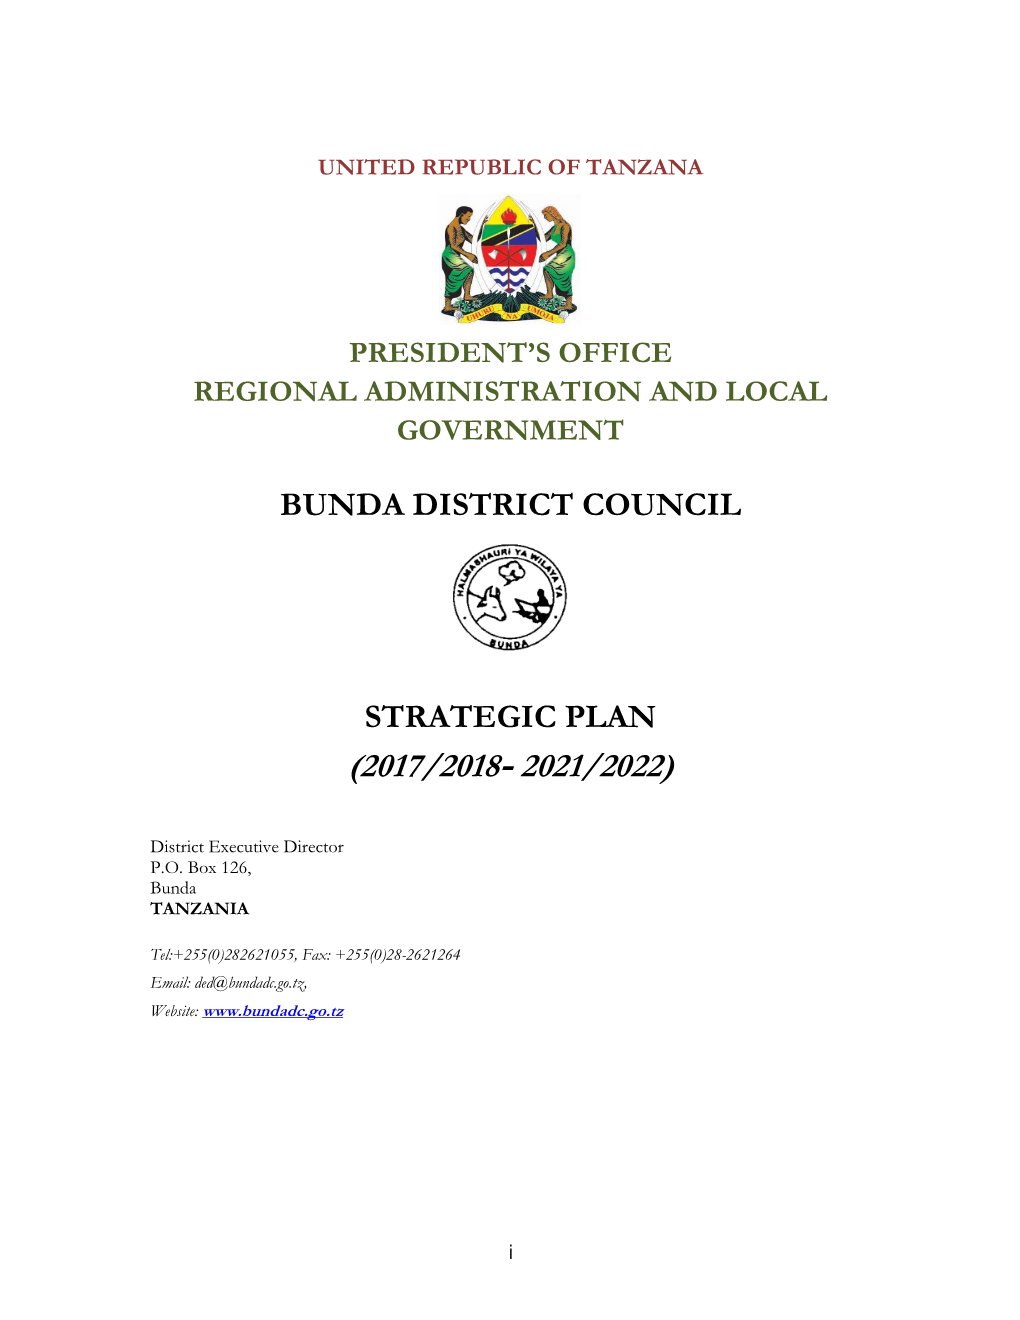 Bunda District Council Strategic Plan